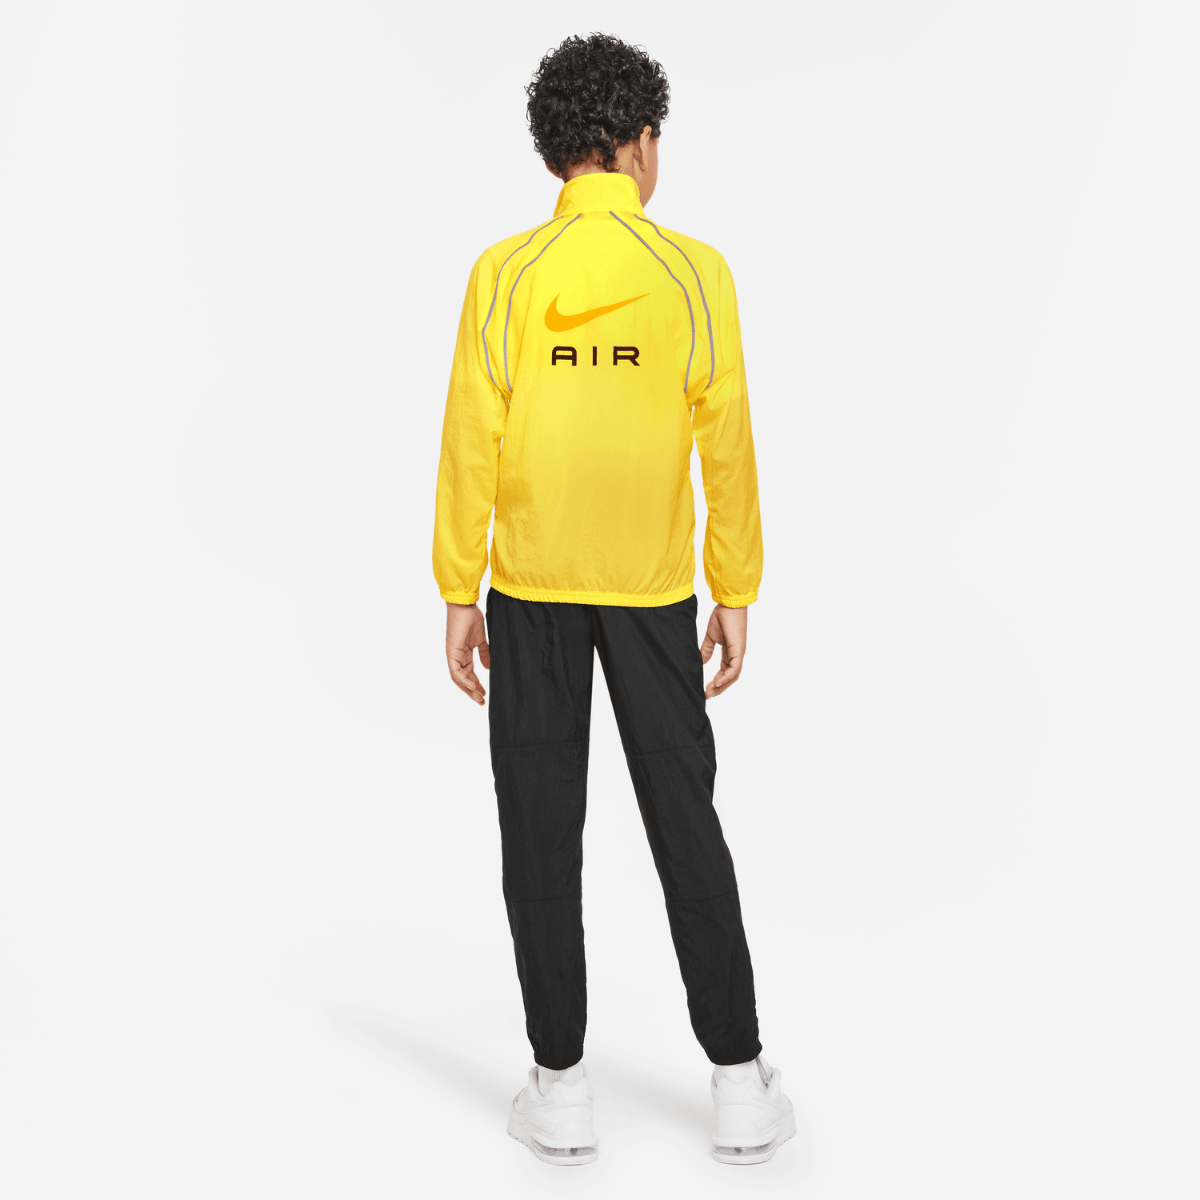 Nike Air Junior Tracksuit - Yellow/Black